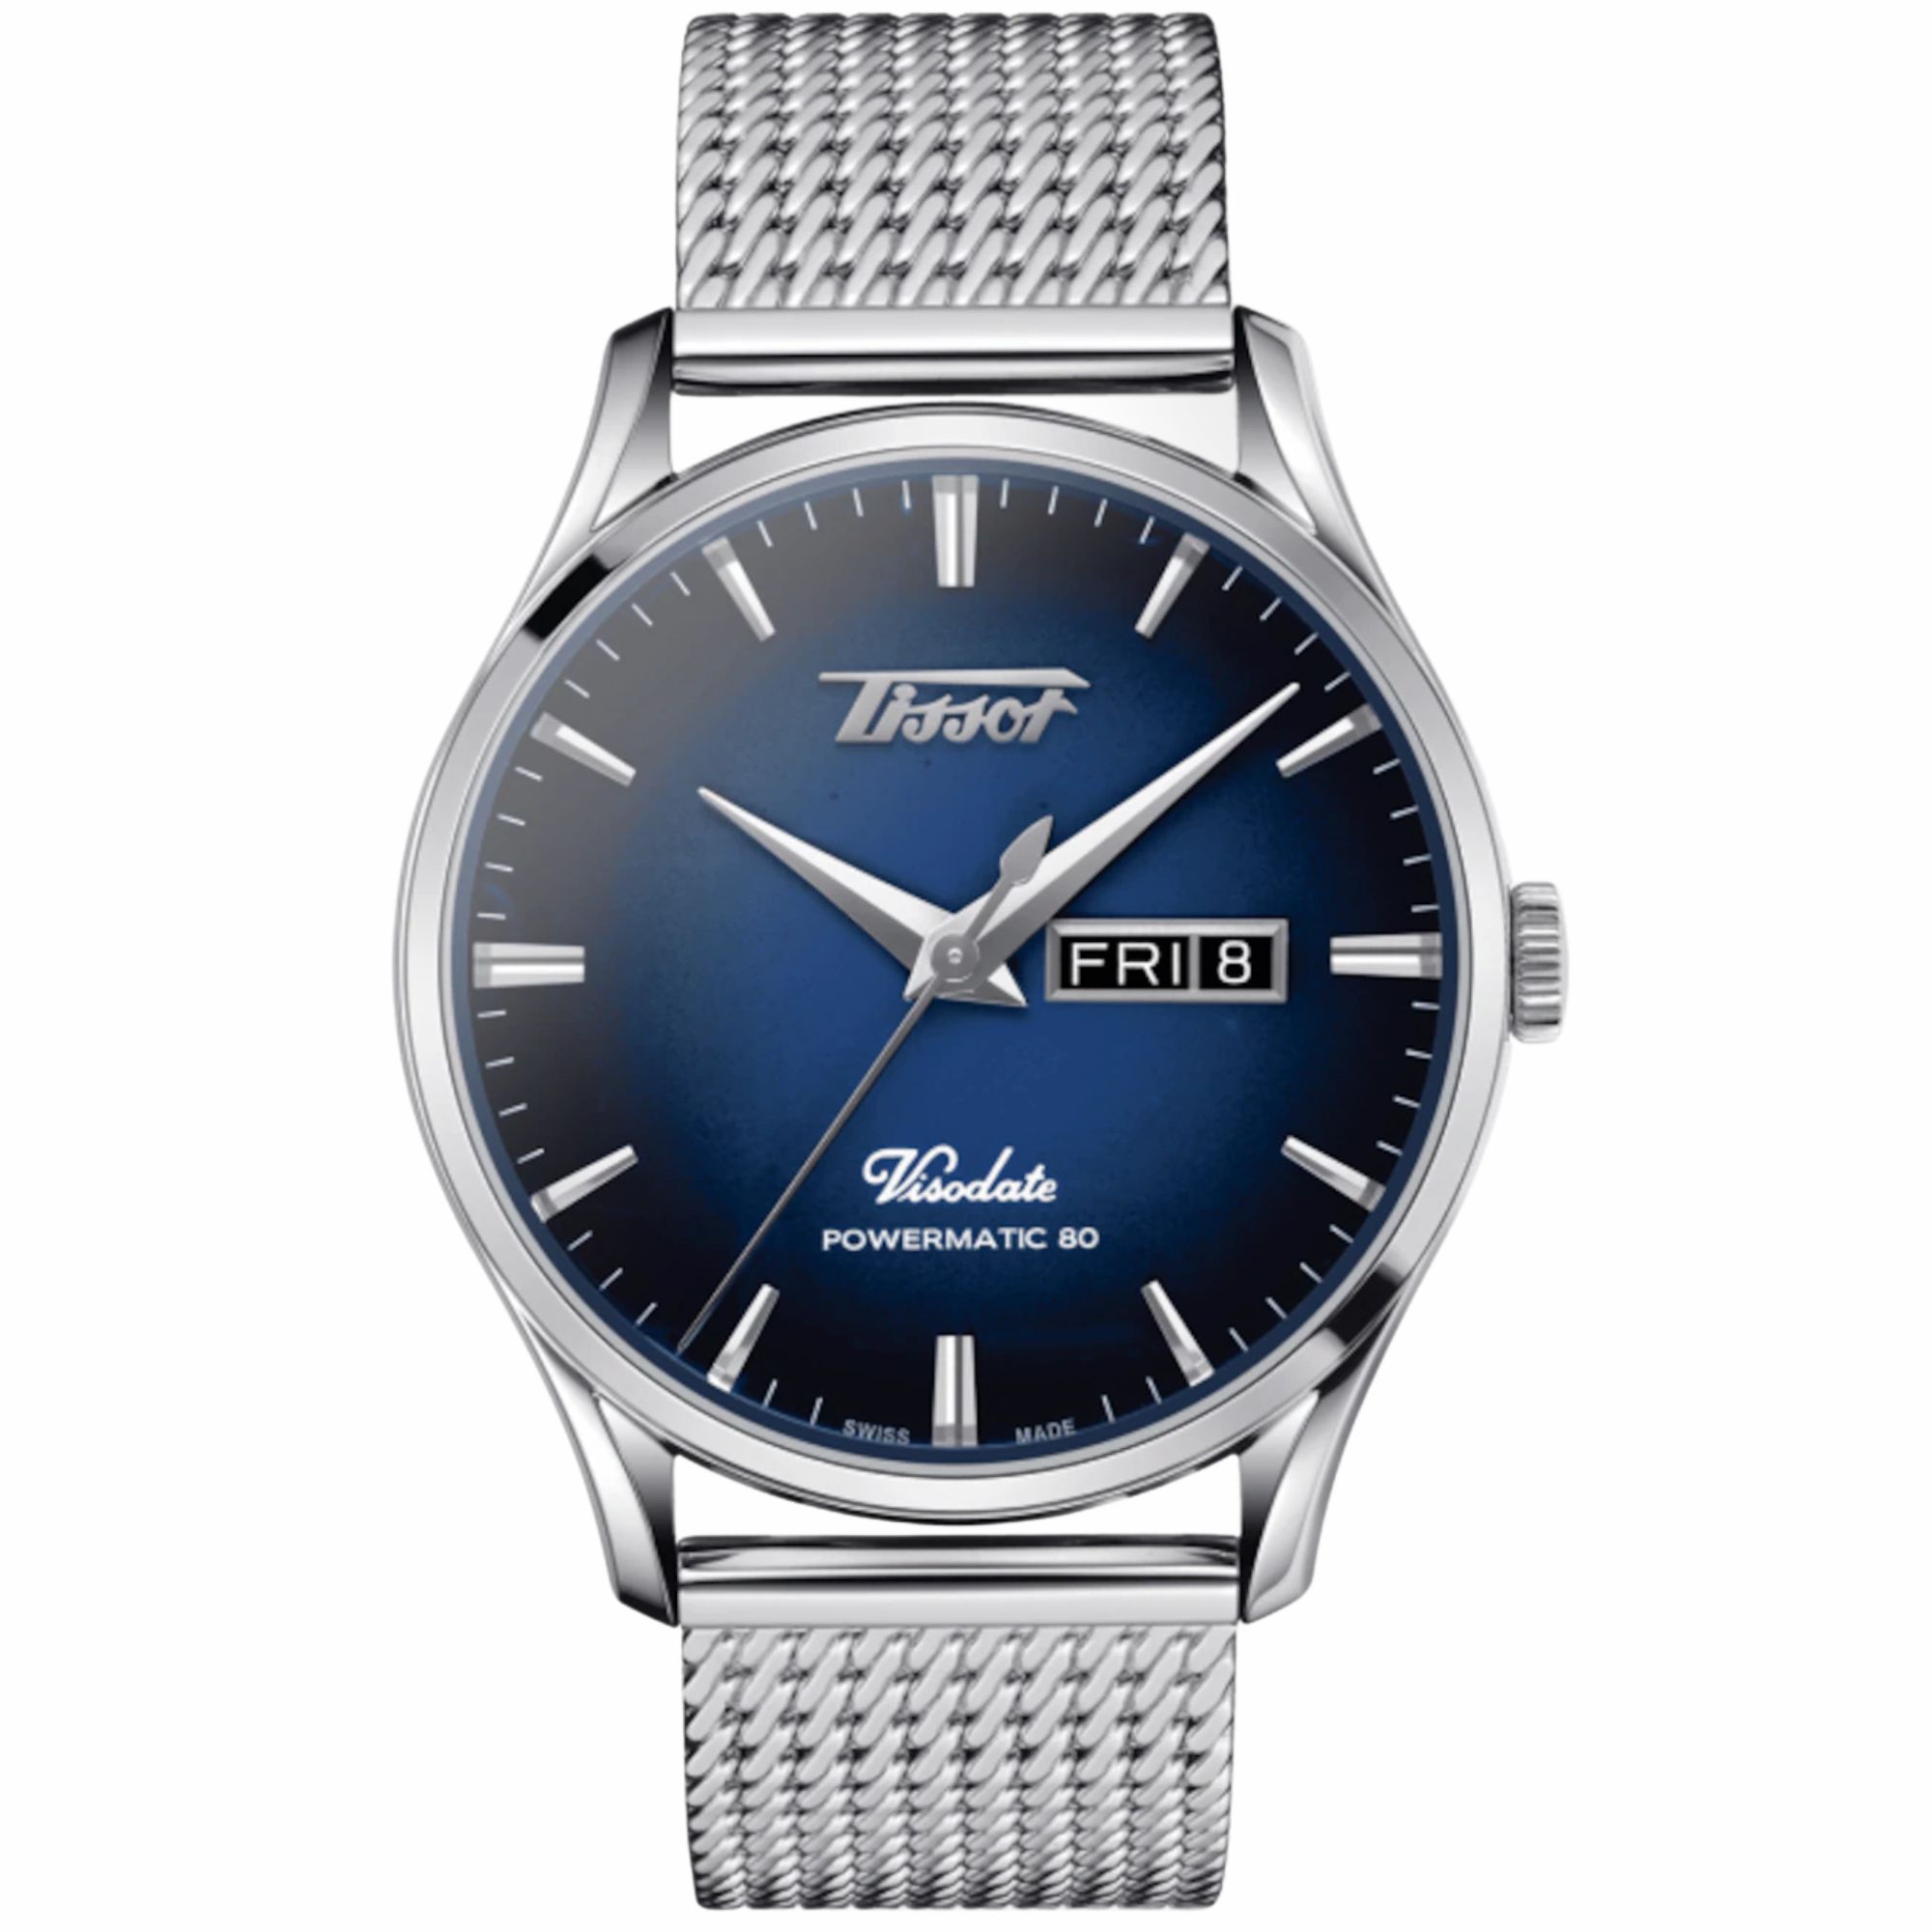 Relógio Tissot Heritage Visodate Powermatic 80 Graduado Azul e Preto T118.430.11.041.00